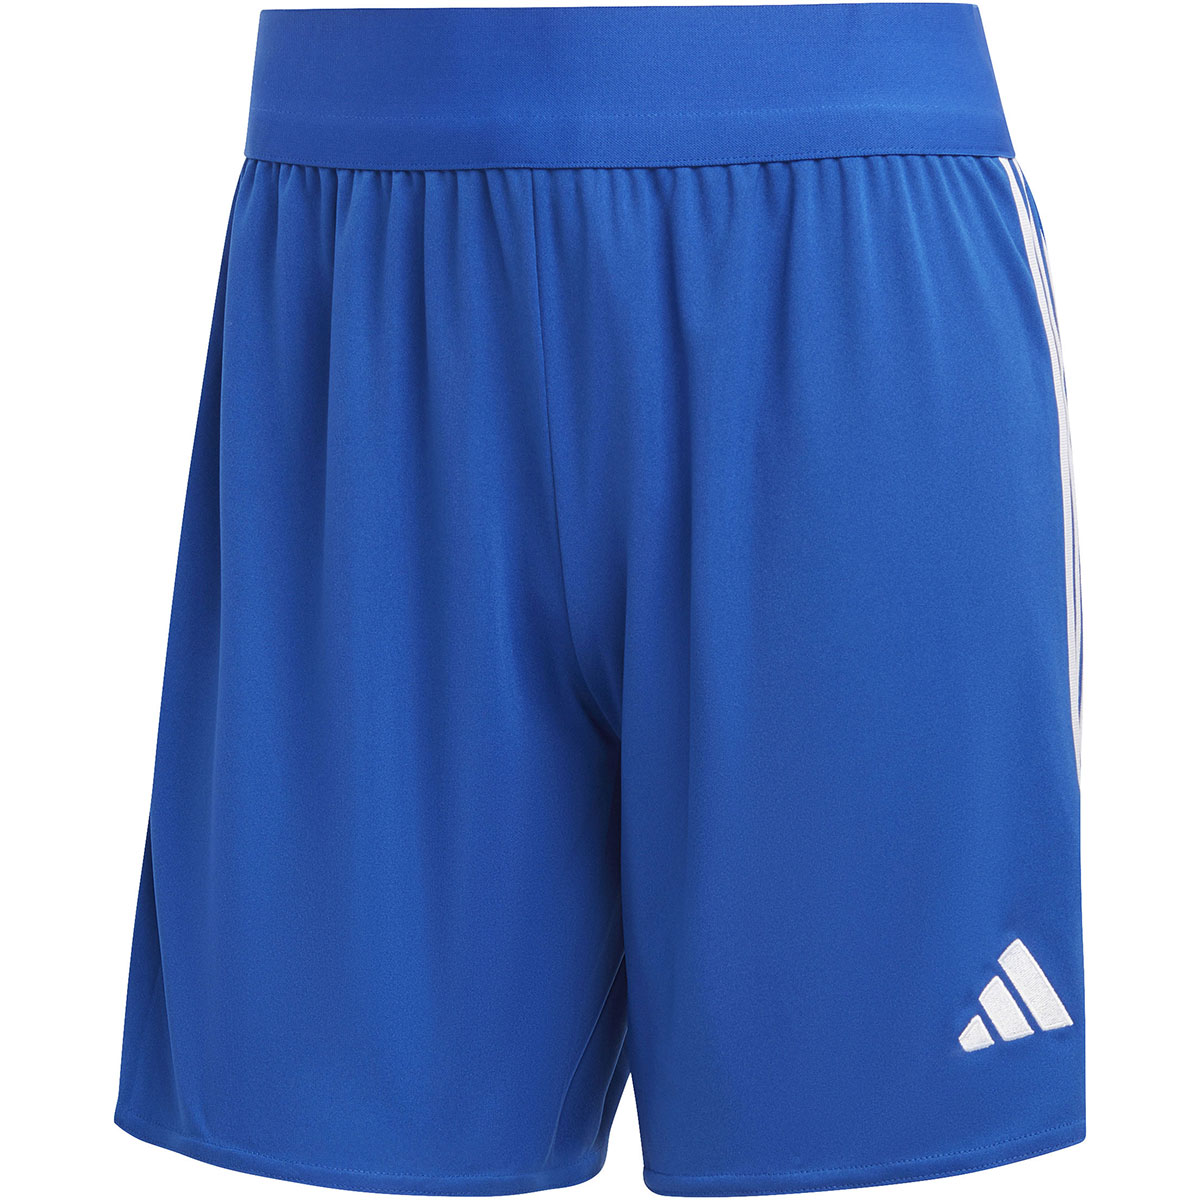 Adidas Damen Shorts Tiro 23 blau-weiß